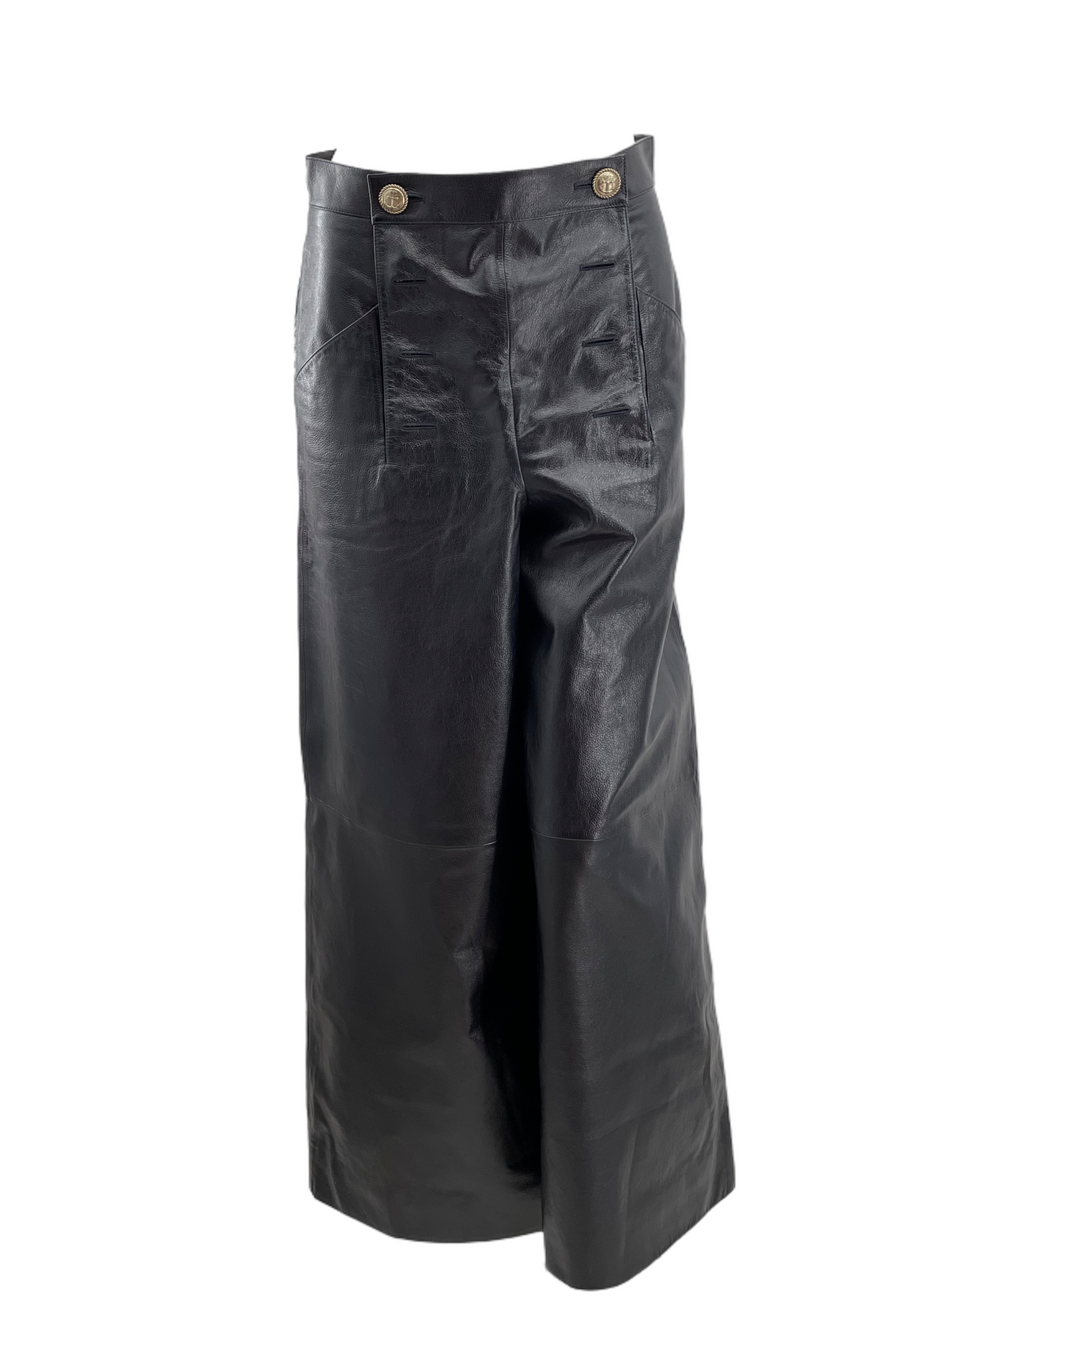 Chanel Leather Sailor Pants (Fashion Show piece)